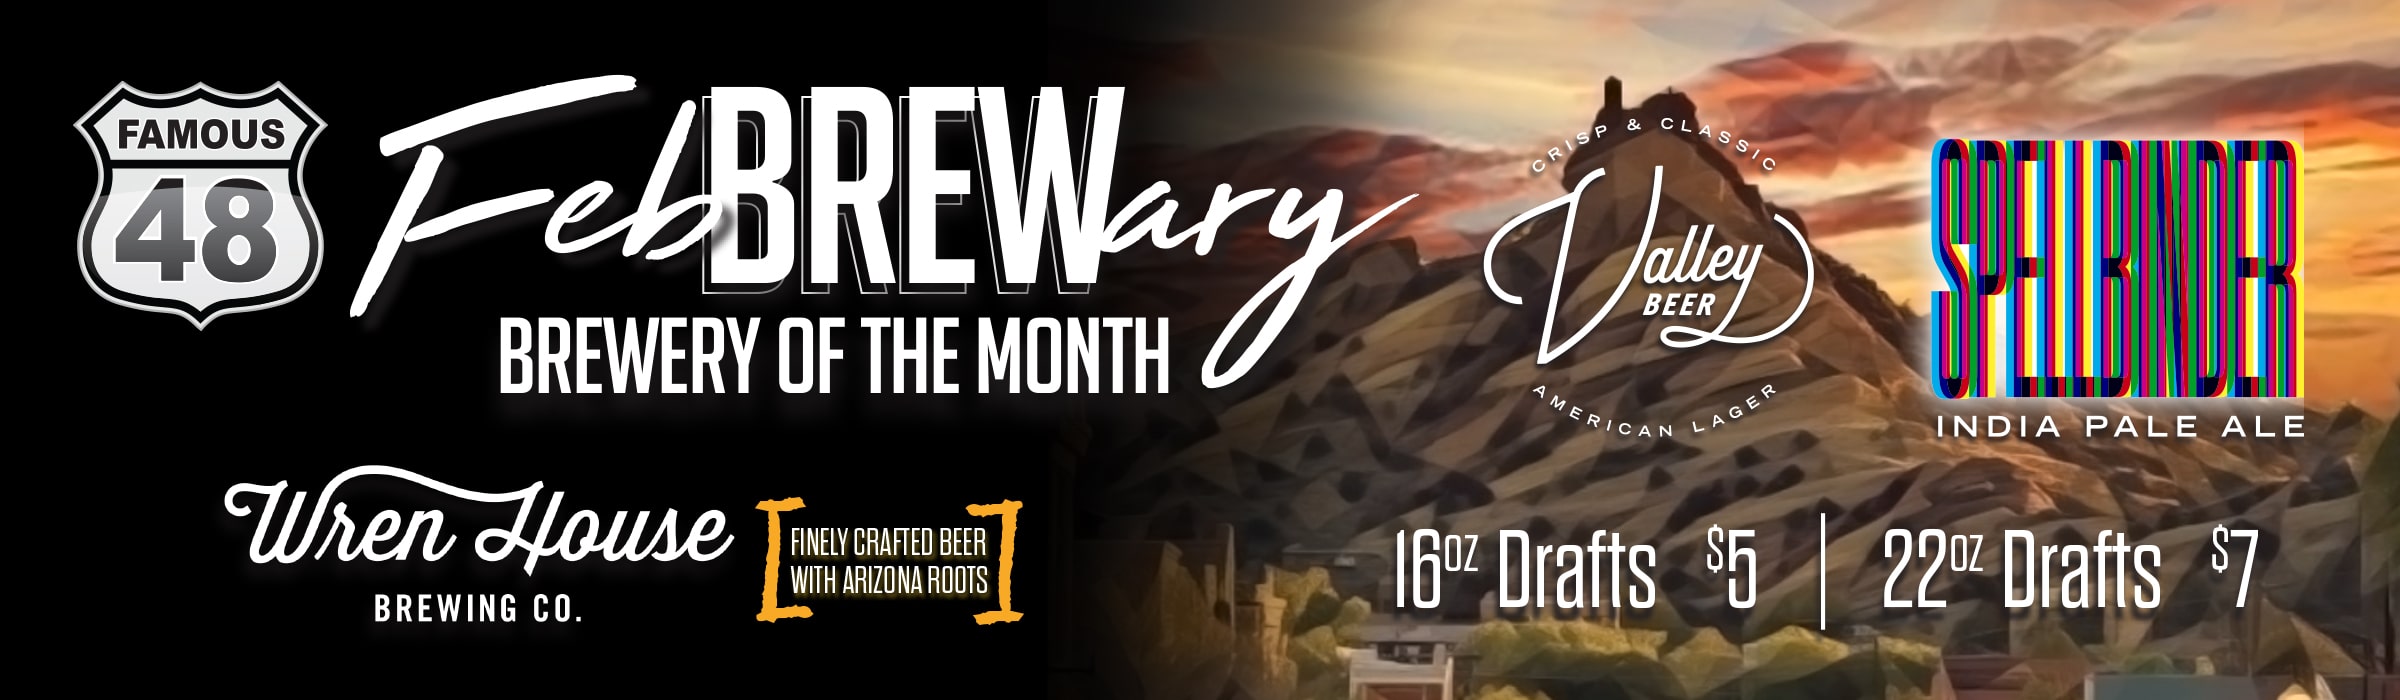 Spellbinder Beer of the Month